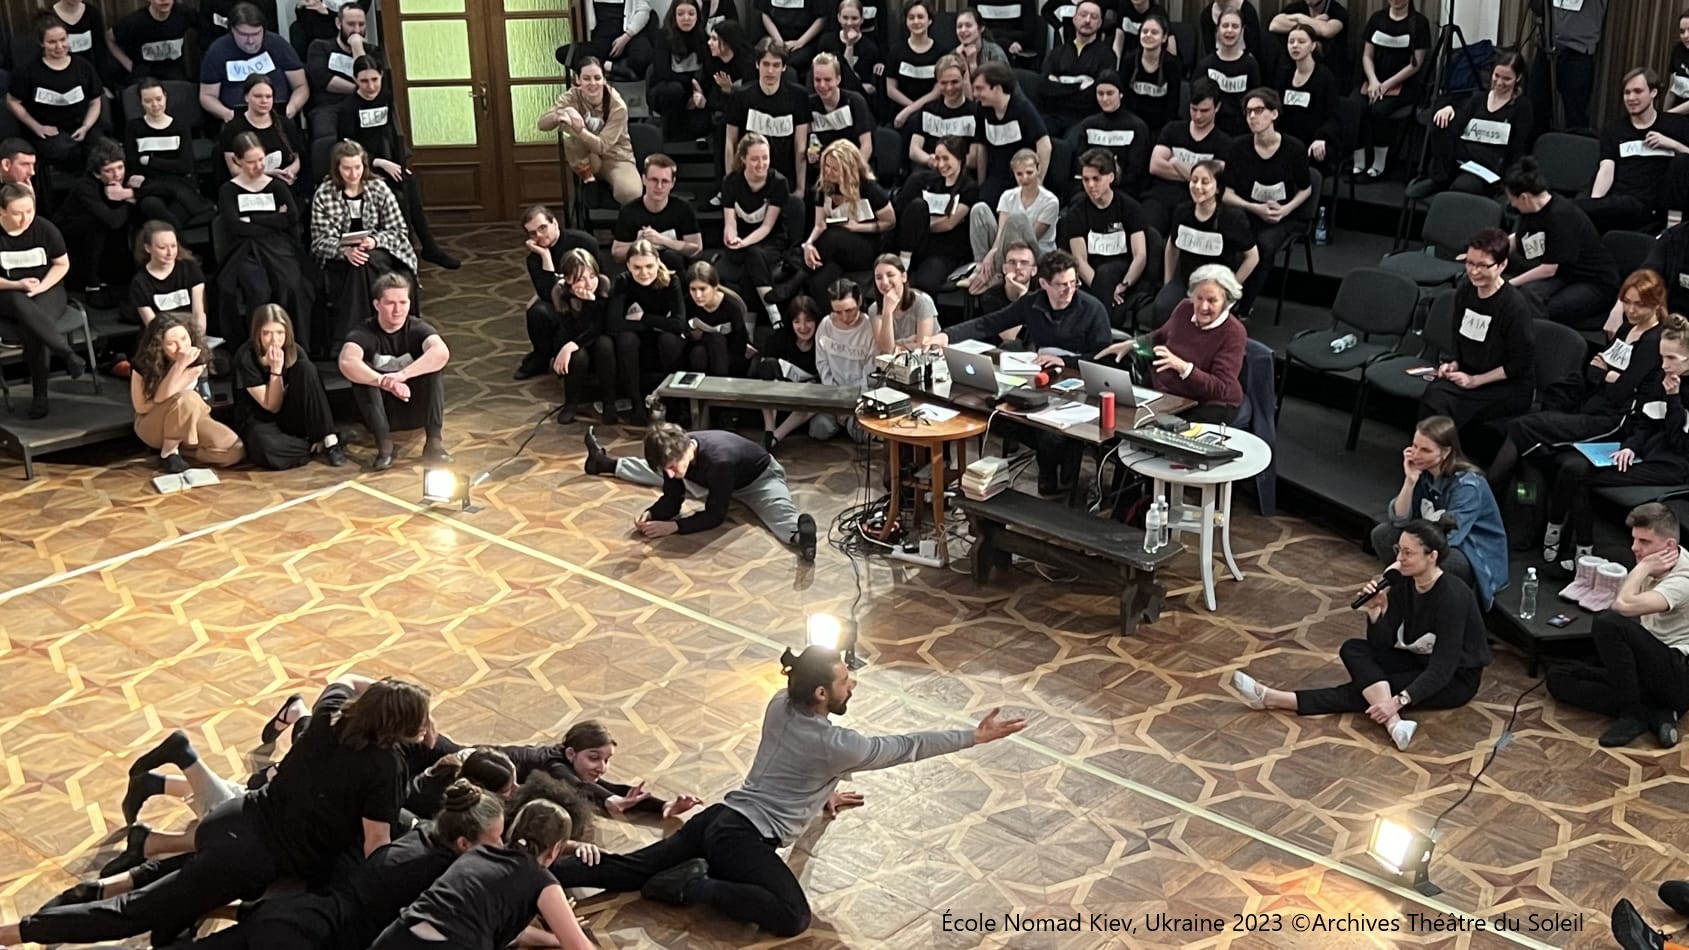 Théâtre du Soleil acting workshop – Call for participants